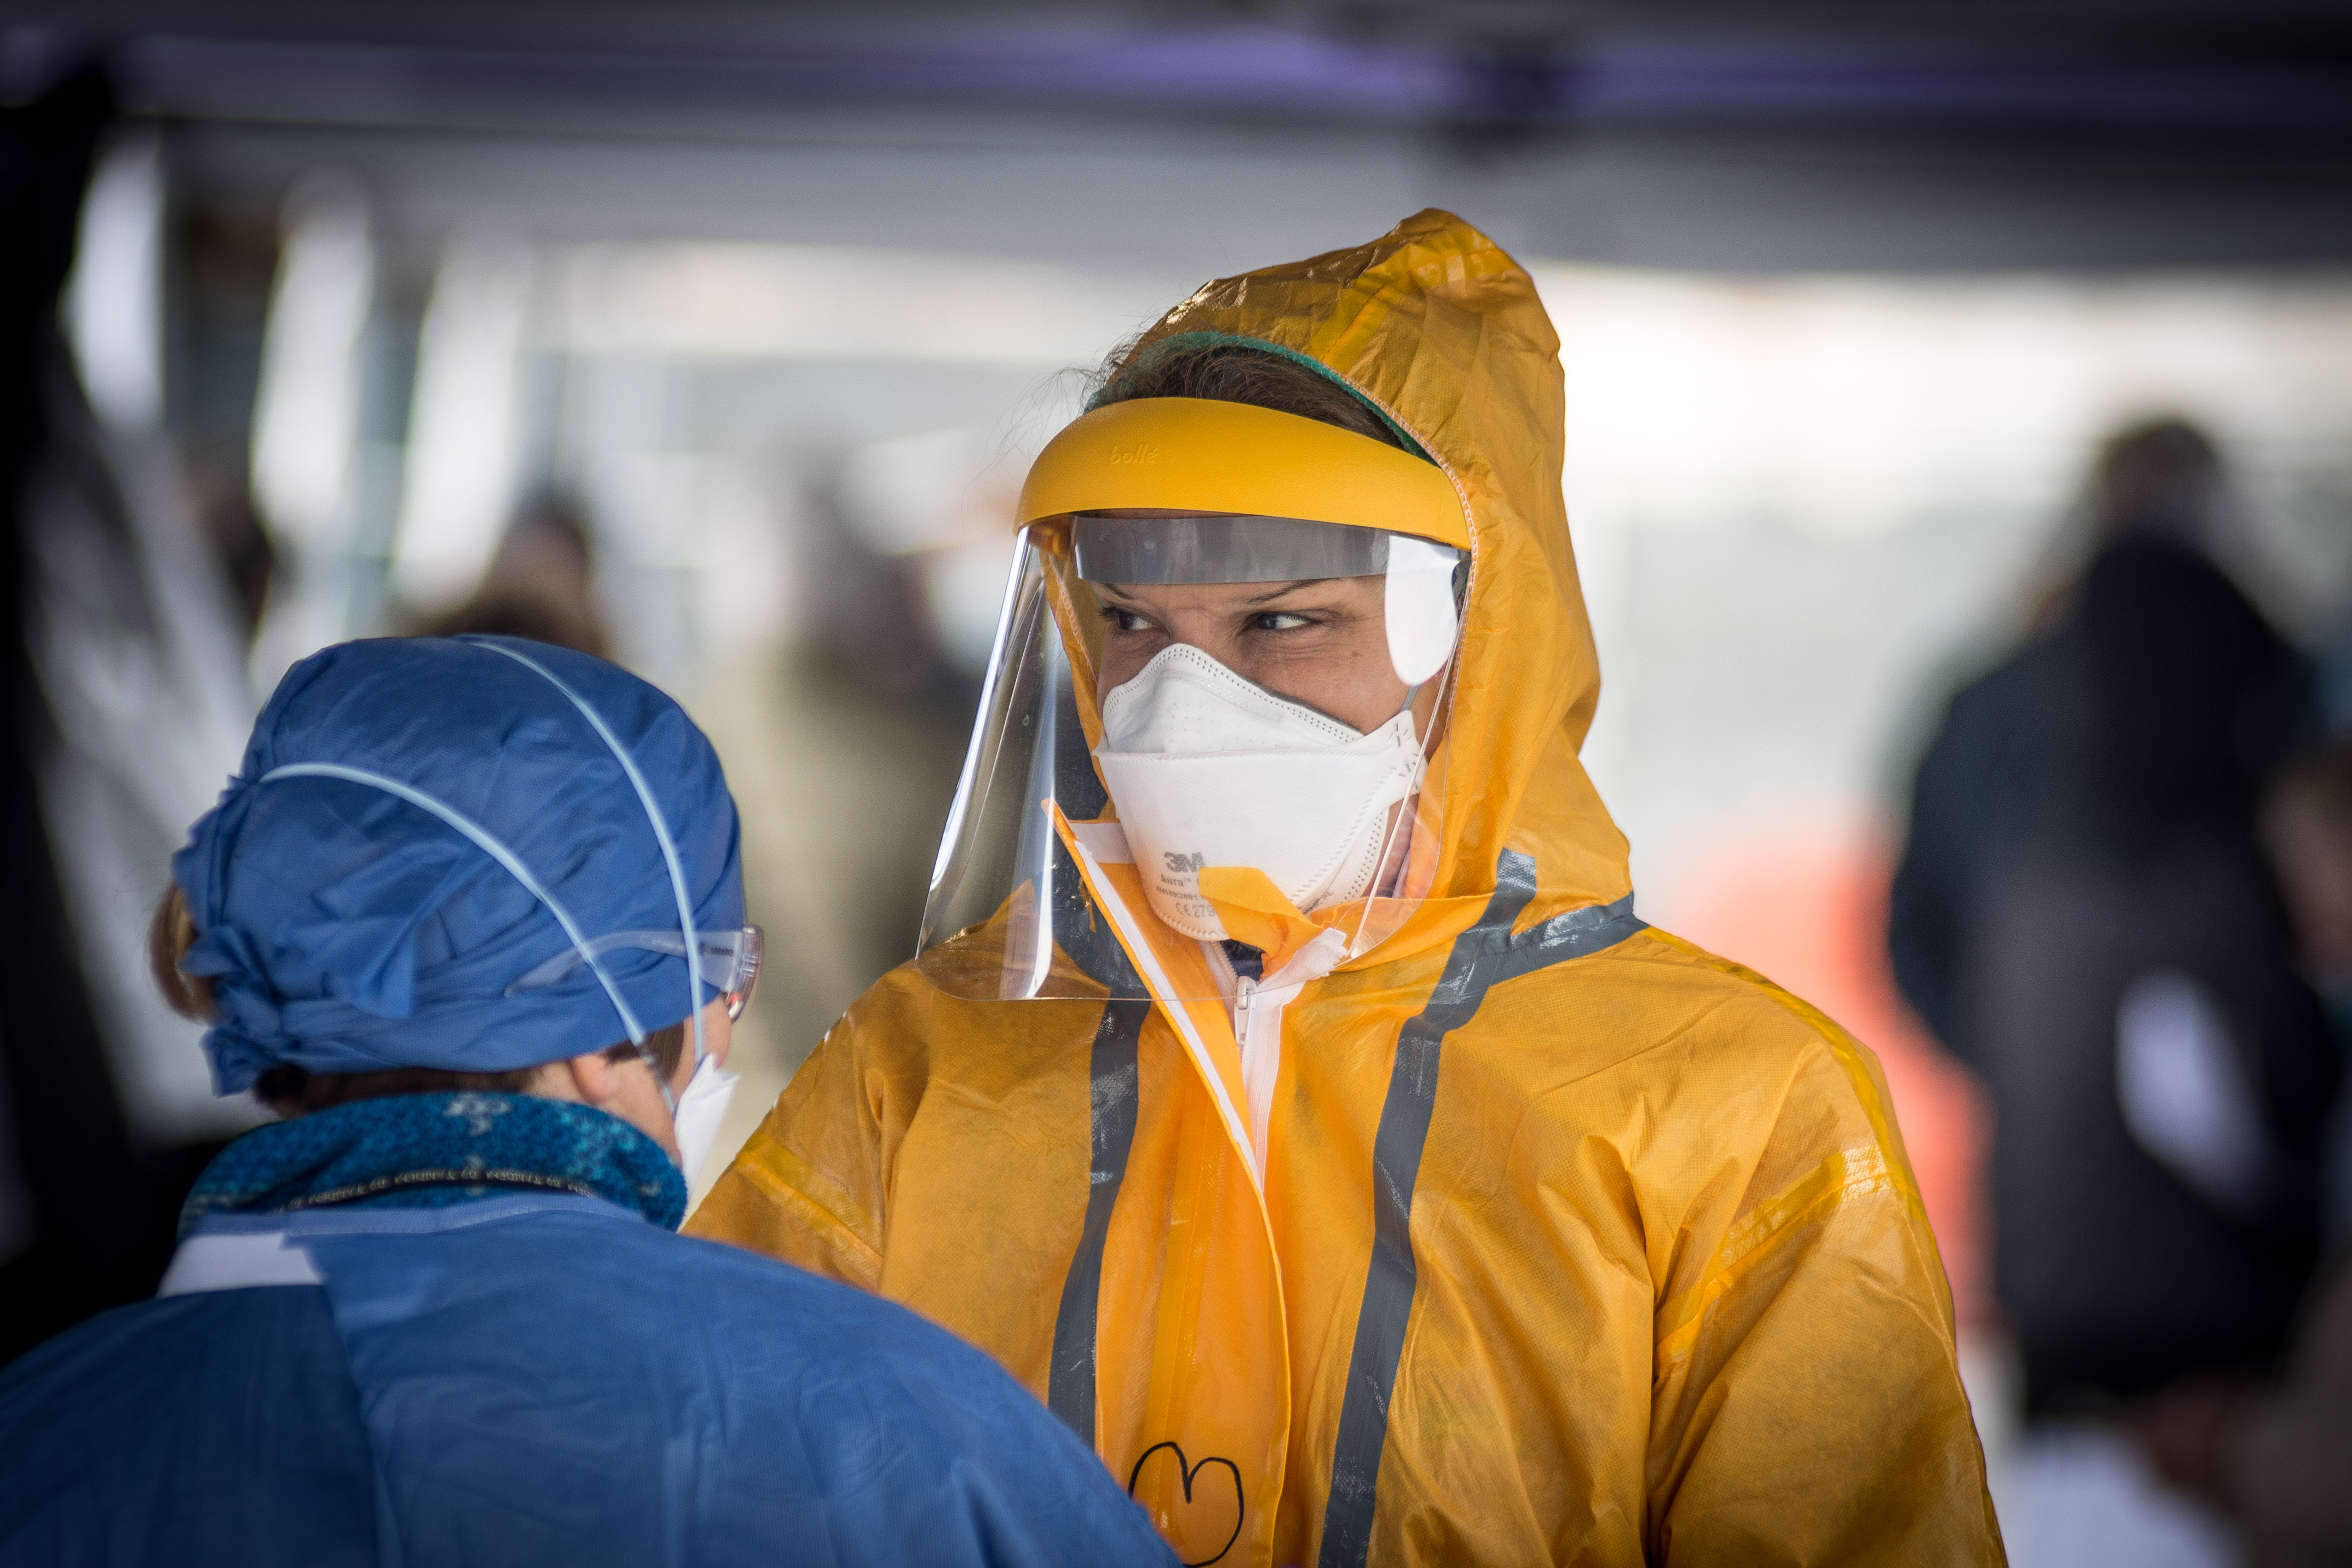 Eddig 6414 egészségügyi dolgozó fertőződött meg Olaszországban